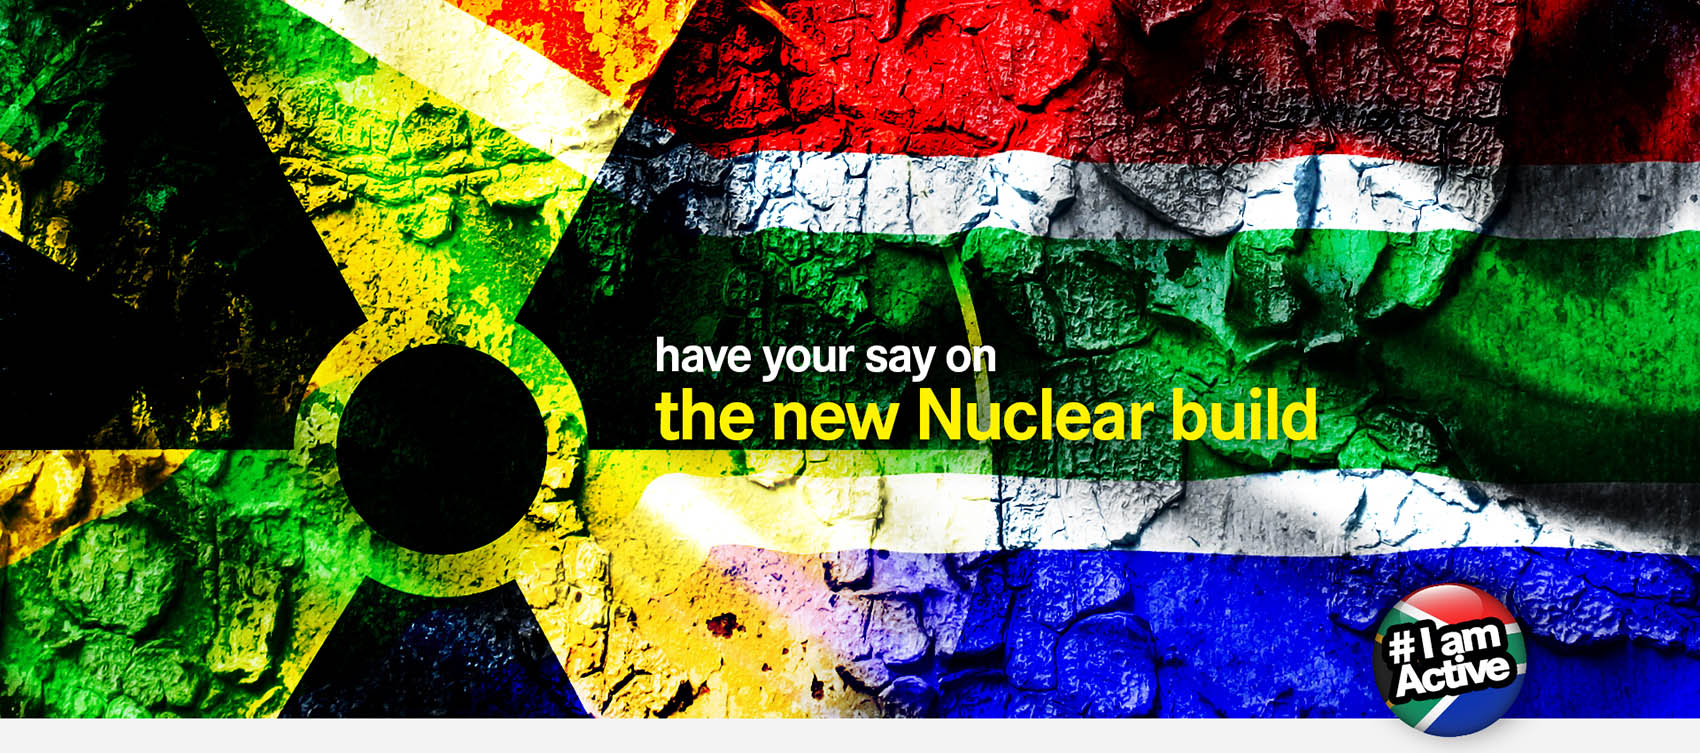 DearSA-new-nuclear-build